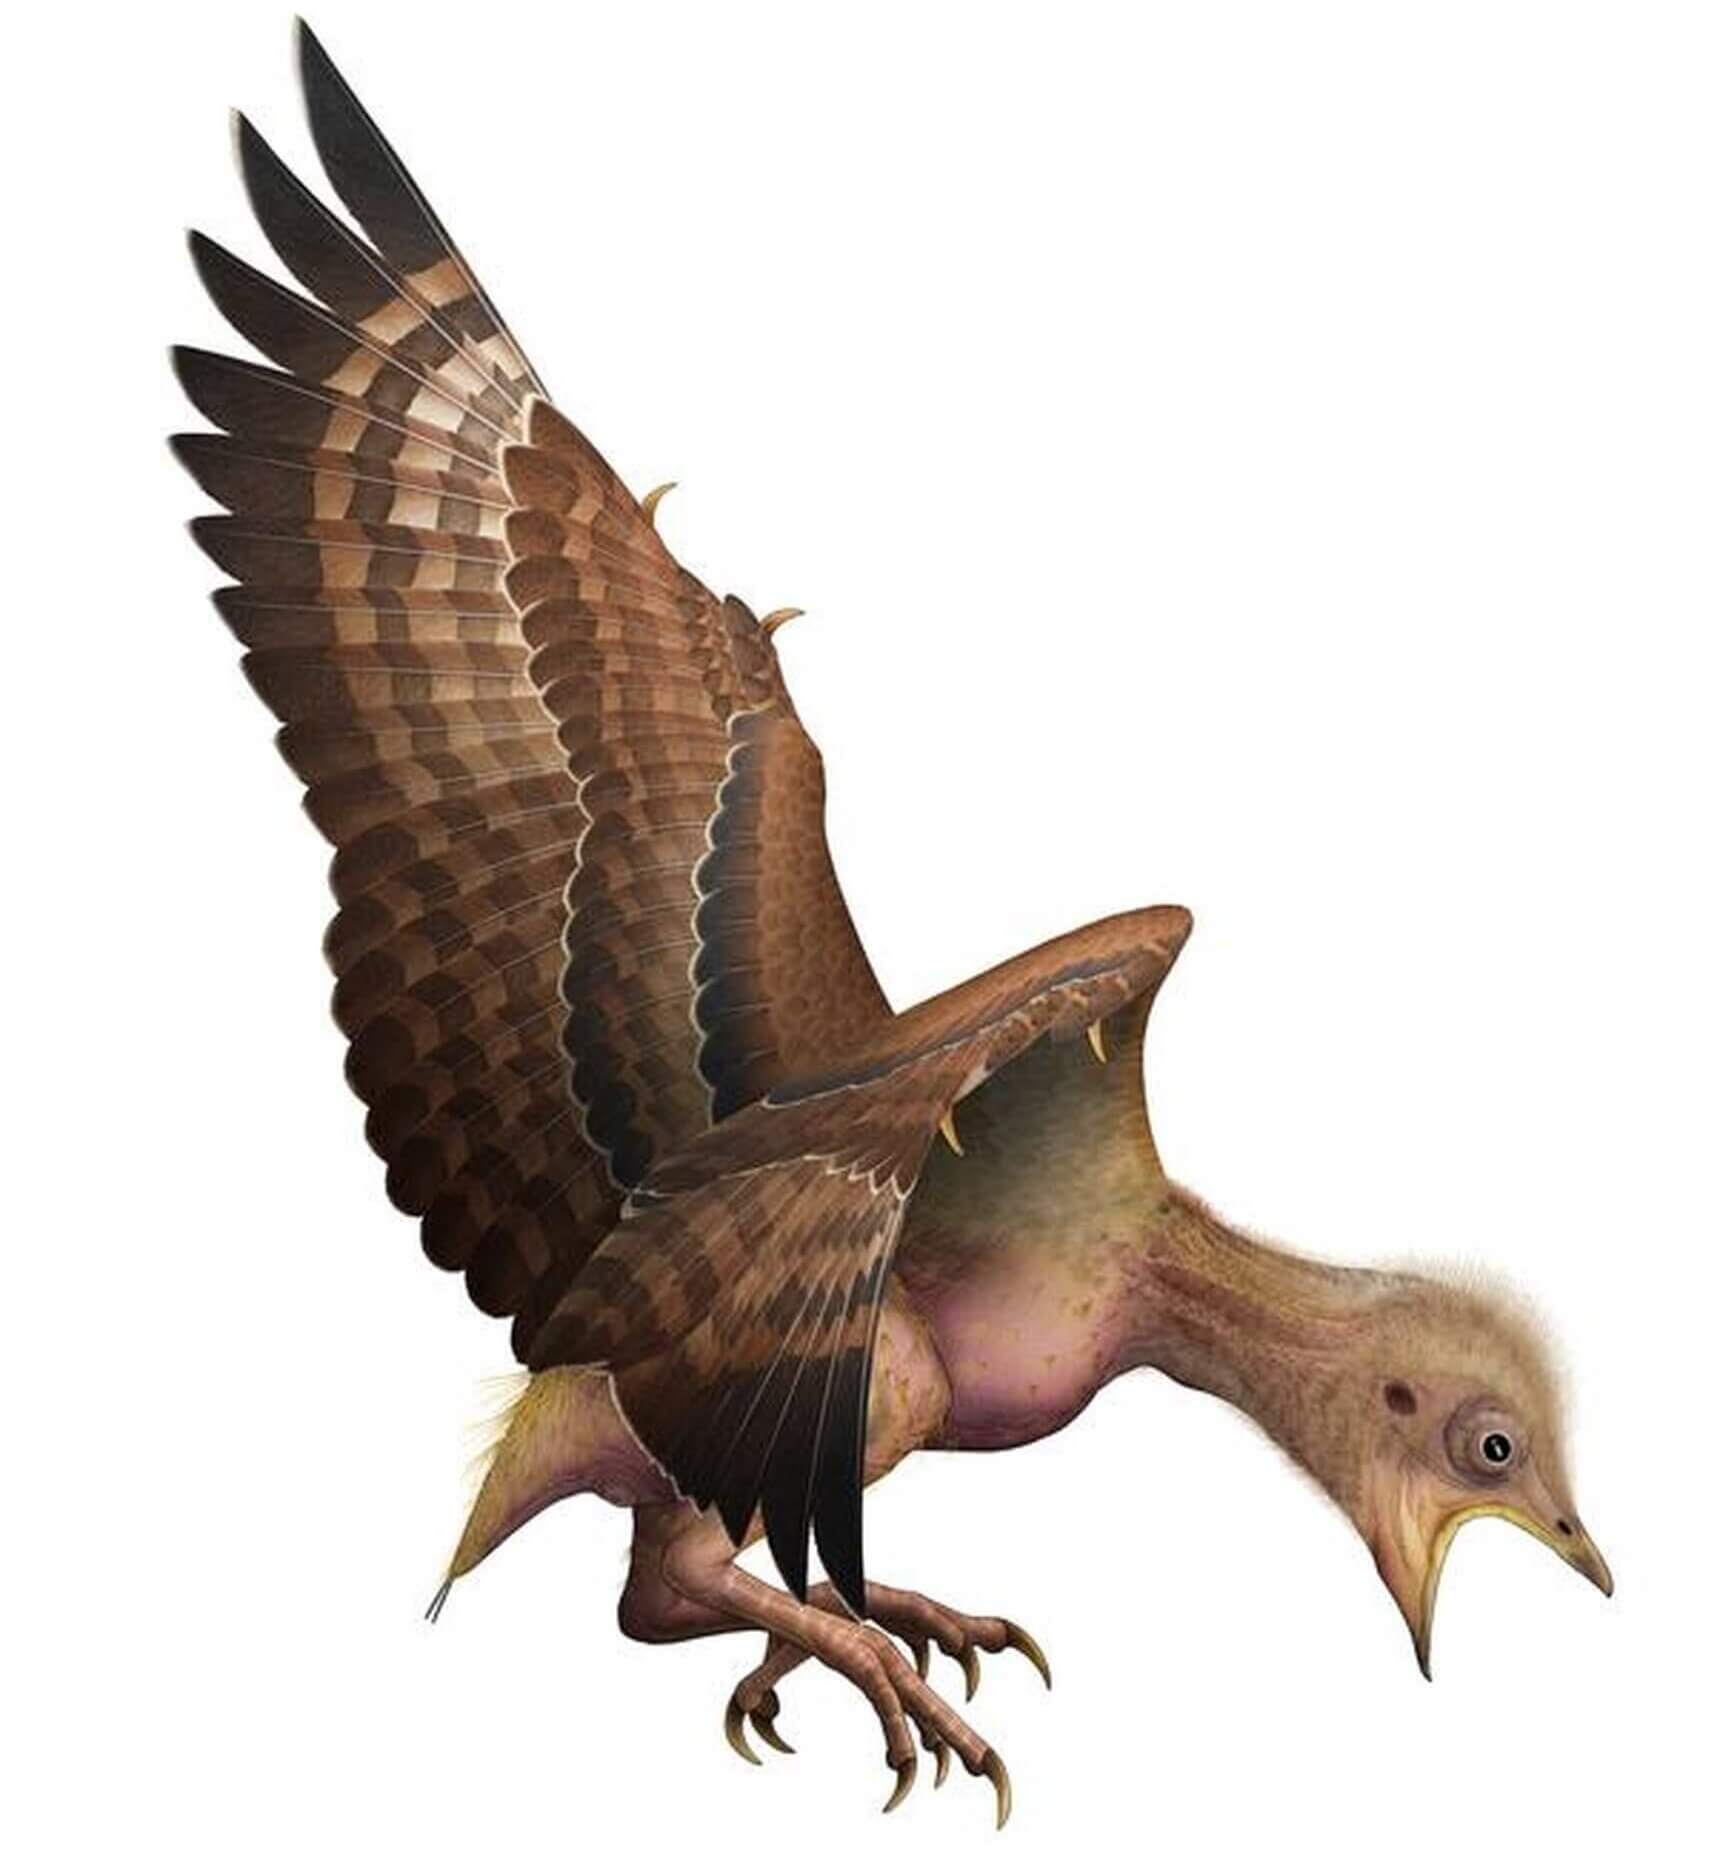 El fósil revela por qué algunas aves prehistóricas vivieron mientras que otras se extinguieron